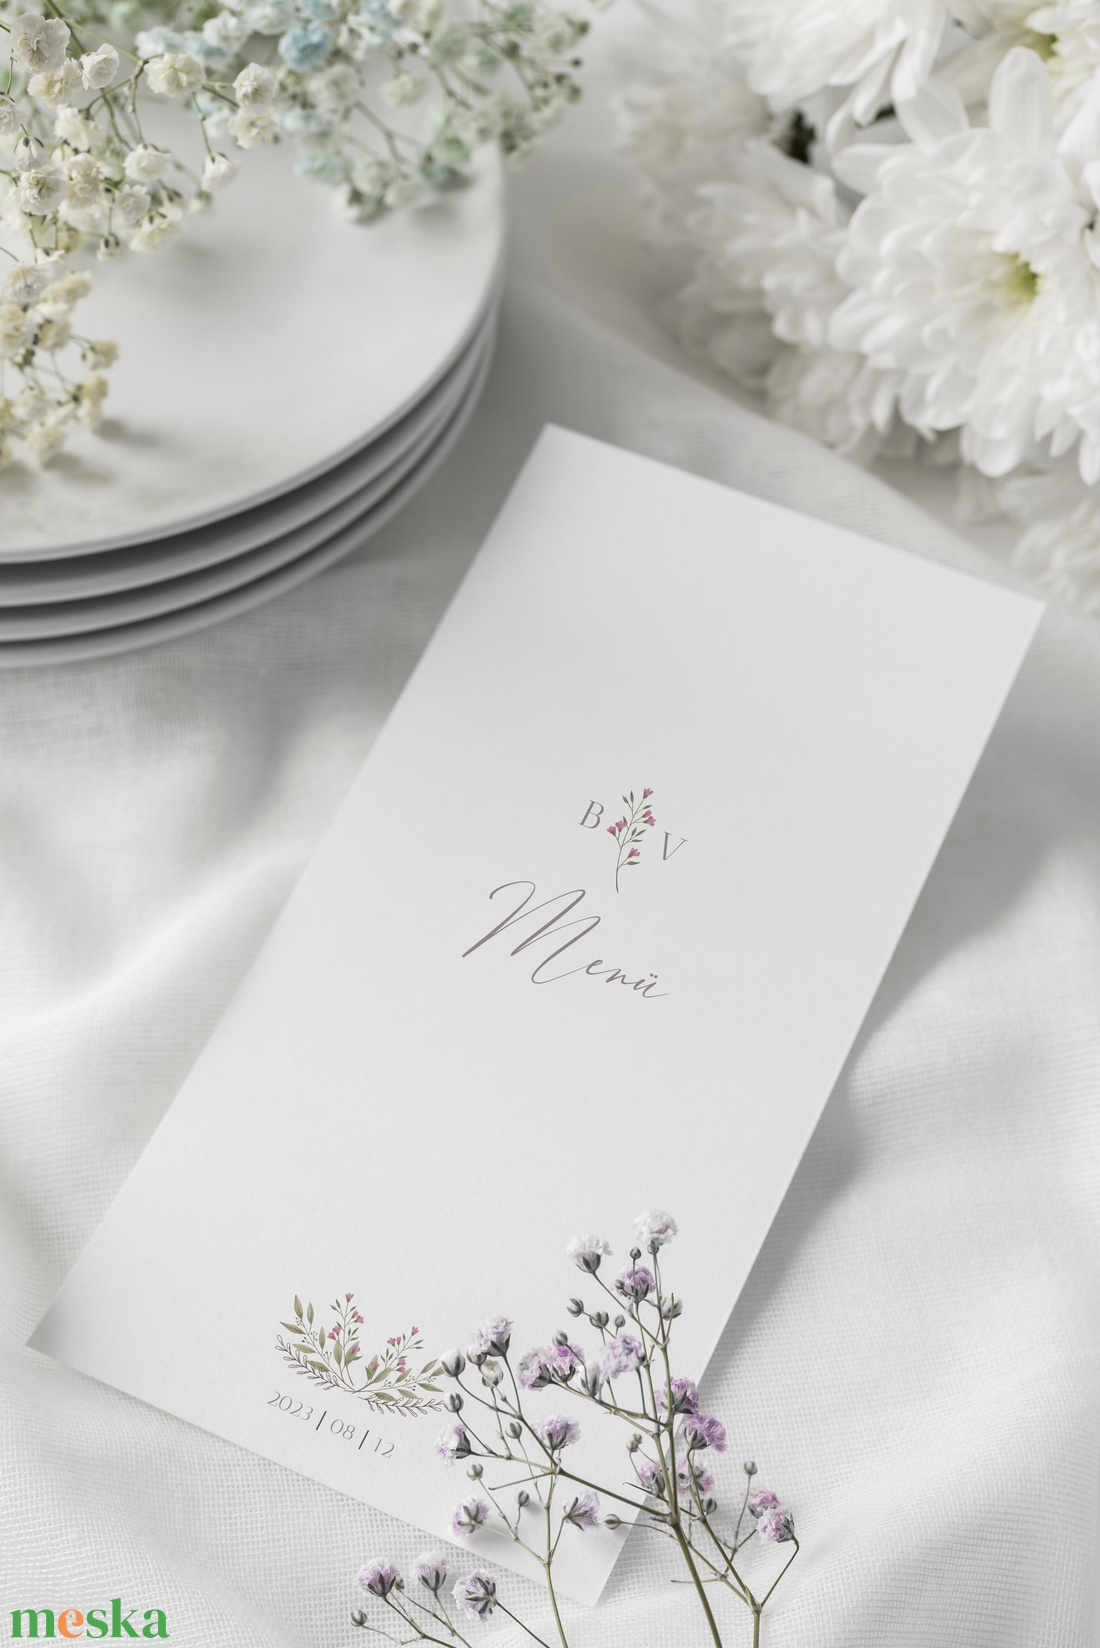 Esküvői menükártya, virágos, Boróka - esküvő - meghívó & kártya - menü - Meska.hu